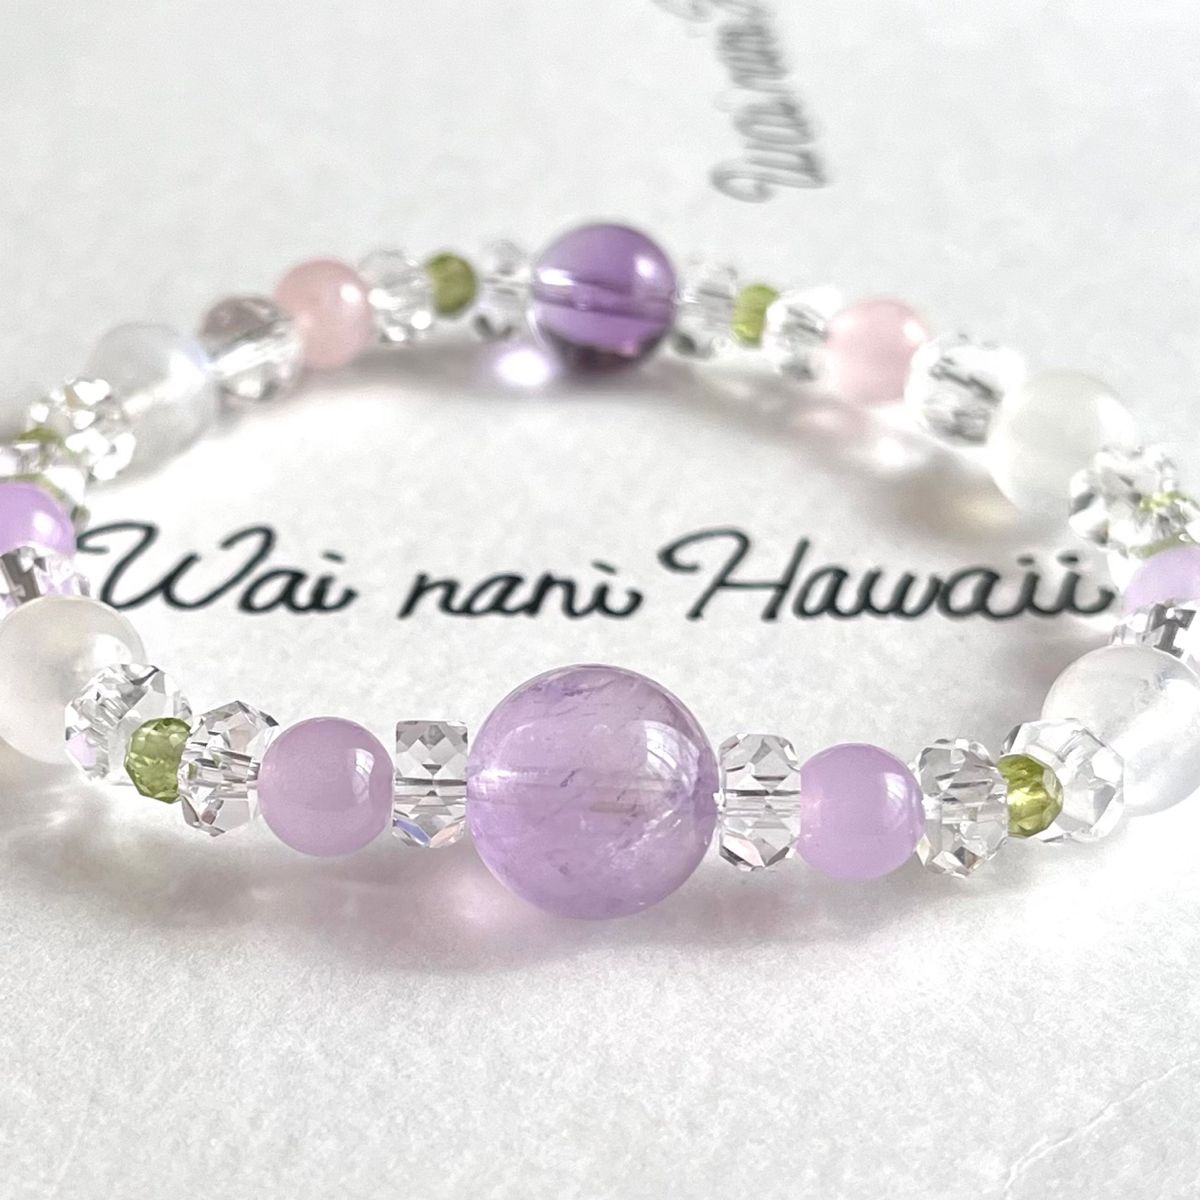 『 Sweet Lavender 花咲く 』ハワイアンパワーストーンブレスレット